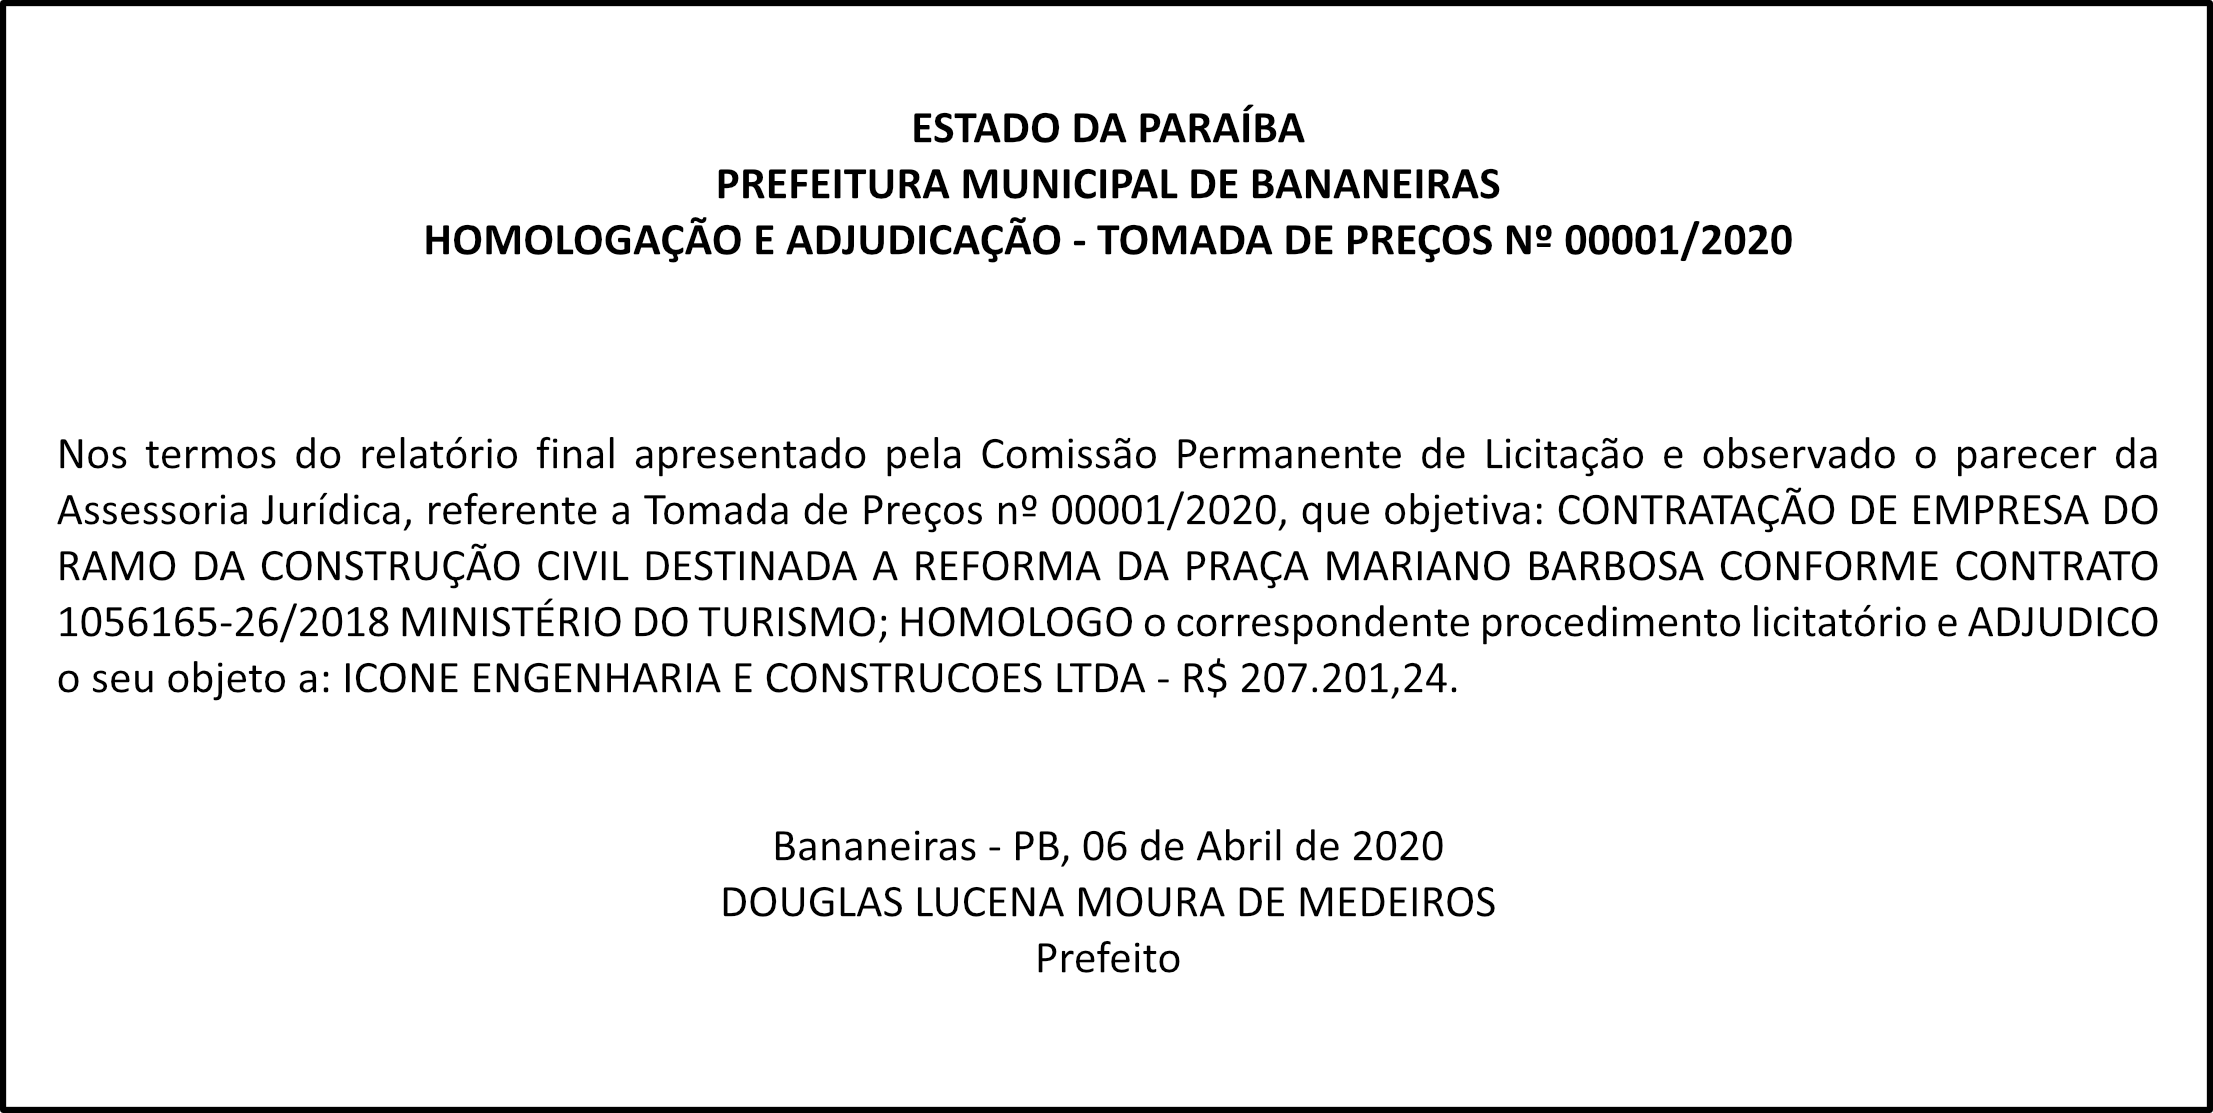 PREFEITURA MUNICIPAL DE BANANEIRAS – HOMOLOGAÇÃO E ADJUDICAÇÃO – TOMADA DE PREÇOS Nº 00001/2020